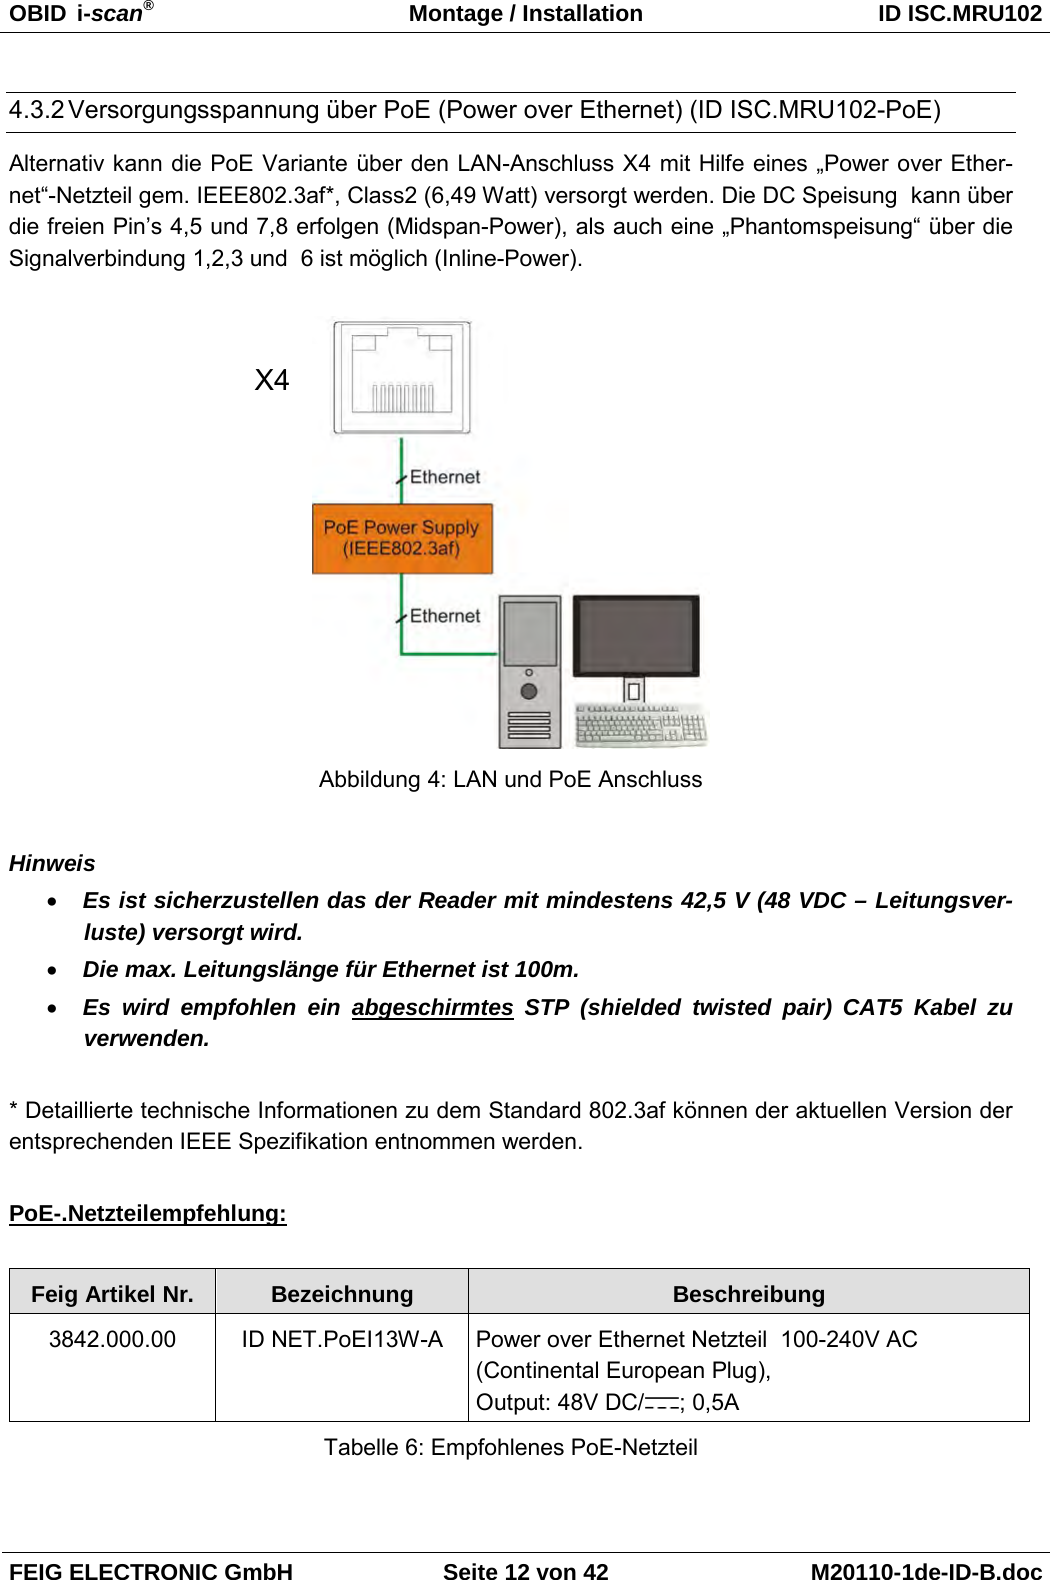 OBID  i-scan® Montage / Installation ID ISC.MRU102  FEIG ELECTRONIC GmbH Seite 12 von 42 M20110-1de-ID-B.doc  4.3.2 Versorgungsspannung über PoE (Power over Ethernet) (ID ISC.MRU102-PoE) Alternativ kann die PoE Variante über den LAN-Anschluss X4 mit Hilfe eines „Power over Ether-net“-Netzteil gem. IEEE802.3af*, Class2 (6,49 Watt) versorgt werden. Die DC Speisung  kann über die freien Pin’s 4,5 und 7,8 erfolgen (Midspan-Power), als auch eine „Phantomspeisung“ über die Signalverbindung 1,2,3 und  6 ist möglich (Inline-Power).    Abbildung 4: LAN und PoE Anschluss  Hinweis • Es ist sicherzustellen das der Reader mit mindestens 42,5 V (48 VDC – Leitungsver-luste) versorgt wird. • Die max. Leitungslänge für Ethernet ist 100m. • Es wird empfohlen ein abgeschirmtes STP  (shielded twisted pair) CAT5 Kabel zu  verwenden.  * Detaillierte technische Informationen zu dem Standard 802.3af können der aktuellen Version der entsprechenden IEEE Spezifikation entnommen werden.  PoE-.Netzteilempfehlung:  Feig Artikel Nr. Bezeichnung Beschreibung 3842.000.00 ID NET.PoEI13W-A  Power over Ethernet Netzteil  100-240V AC  (Continental European Plug), Output: 48V DC/ ; 0,5A Tabelle 6: Empfohlenes PoE-Netzteil  X4 